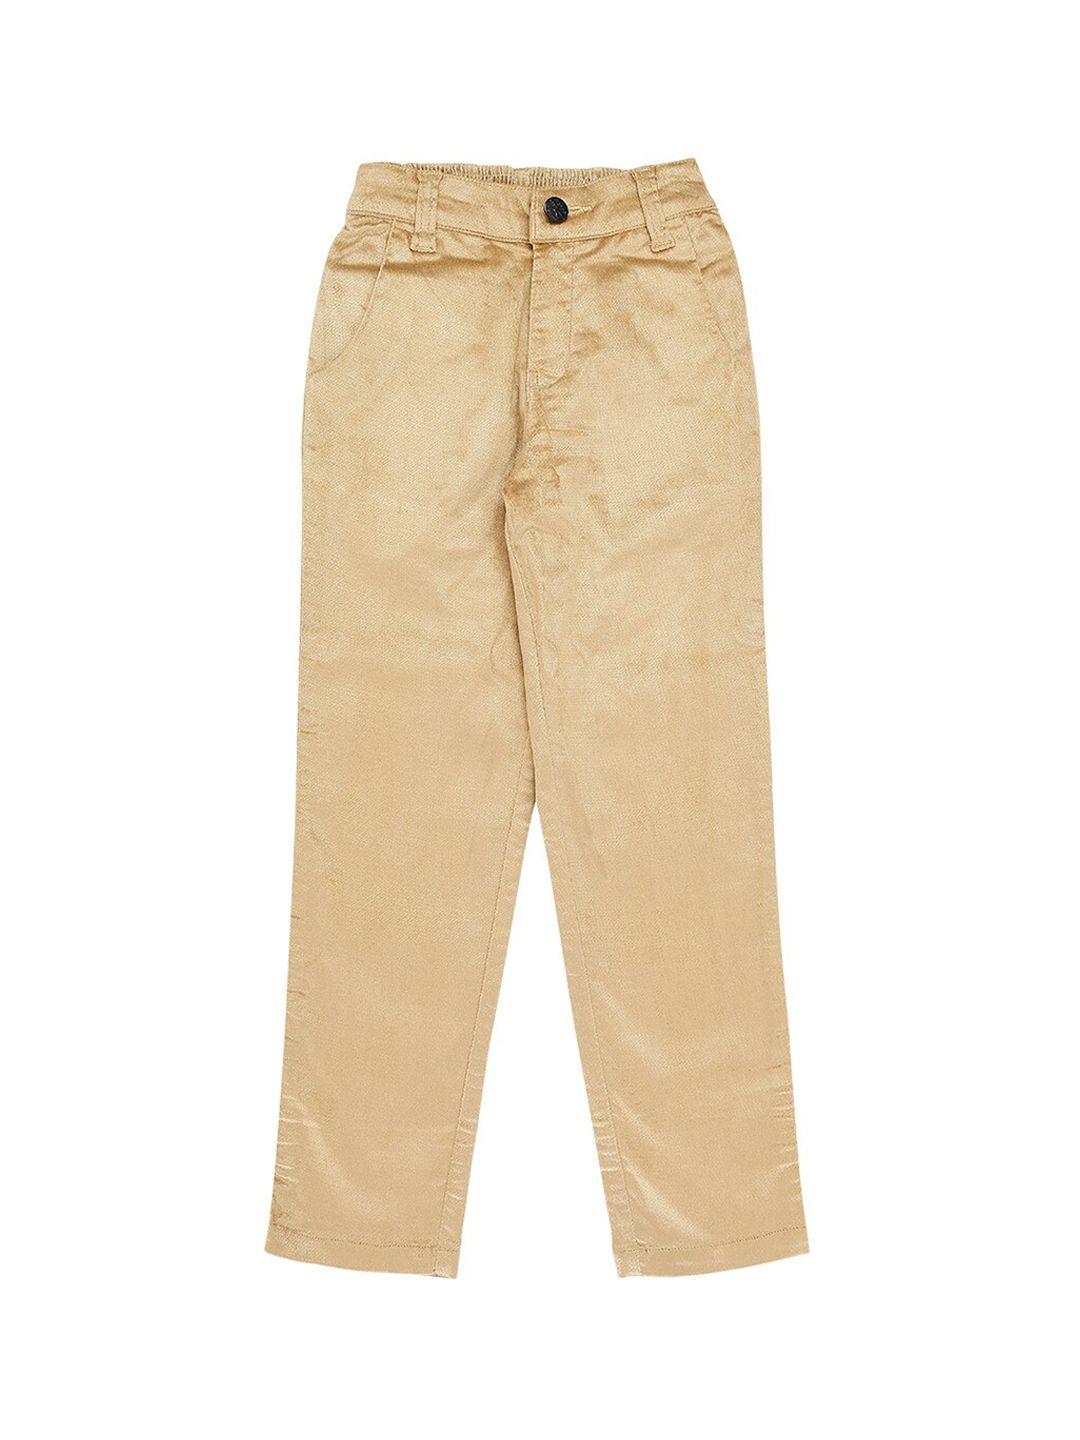 actuel-boys-beige-party-wear-cotton-trouser